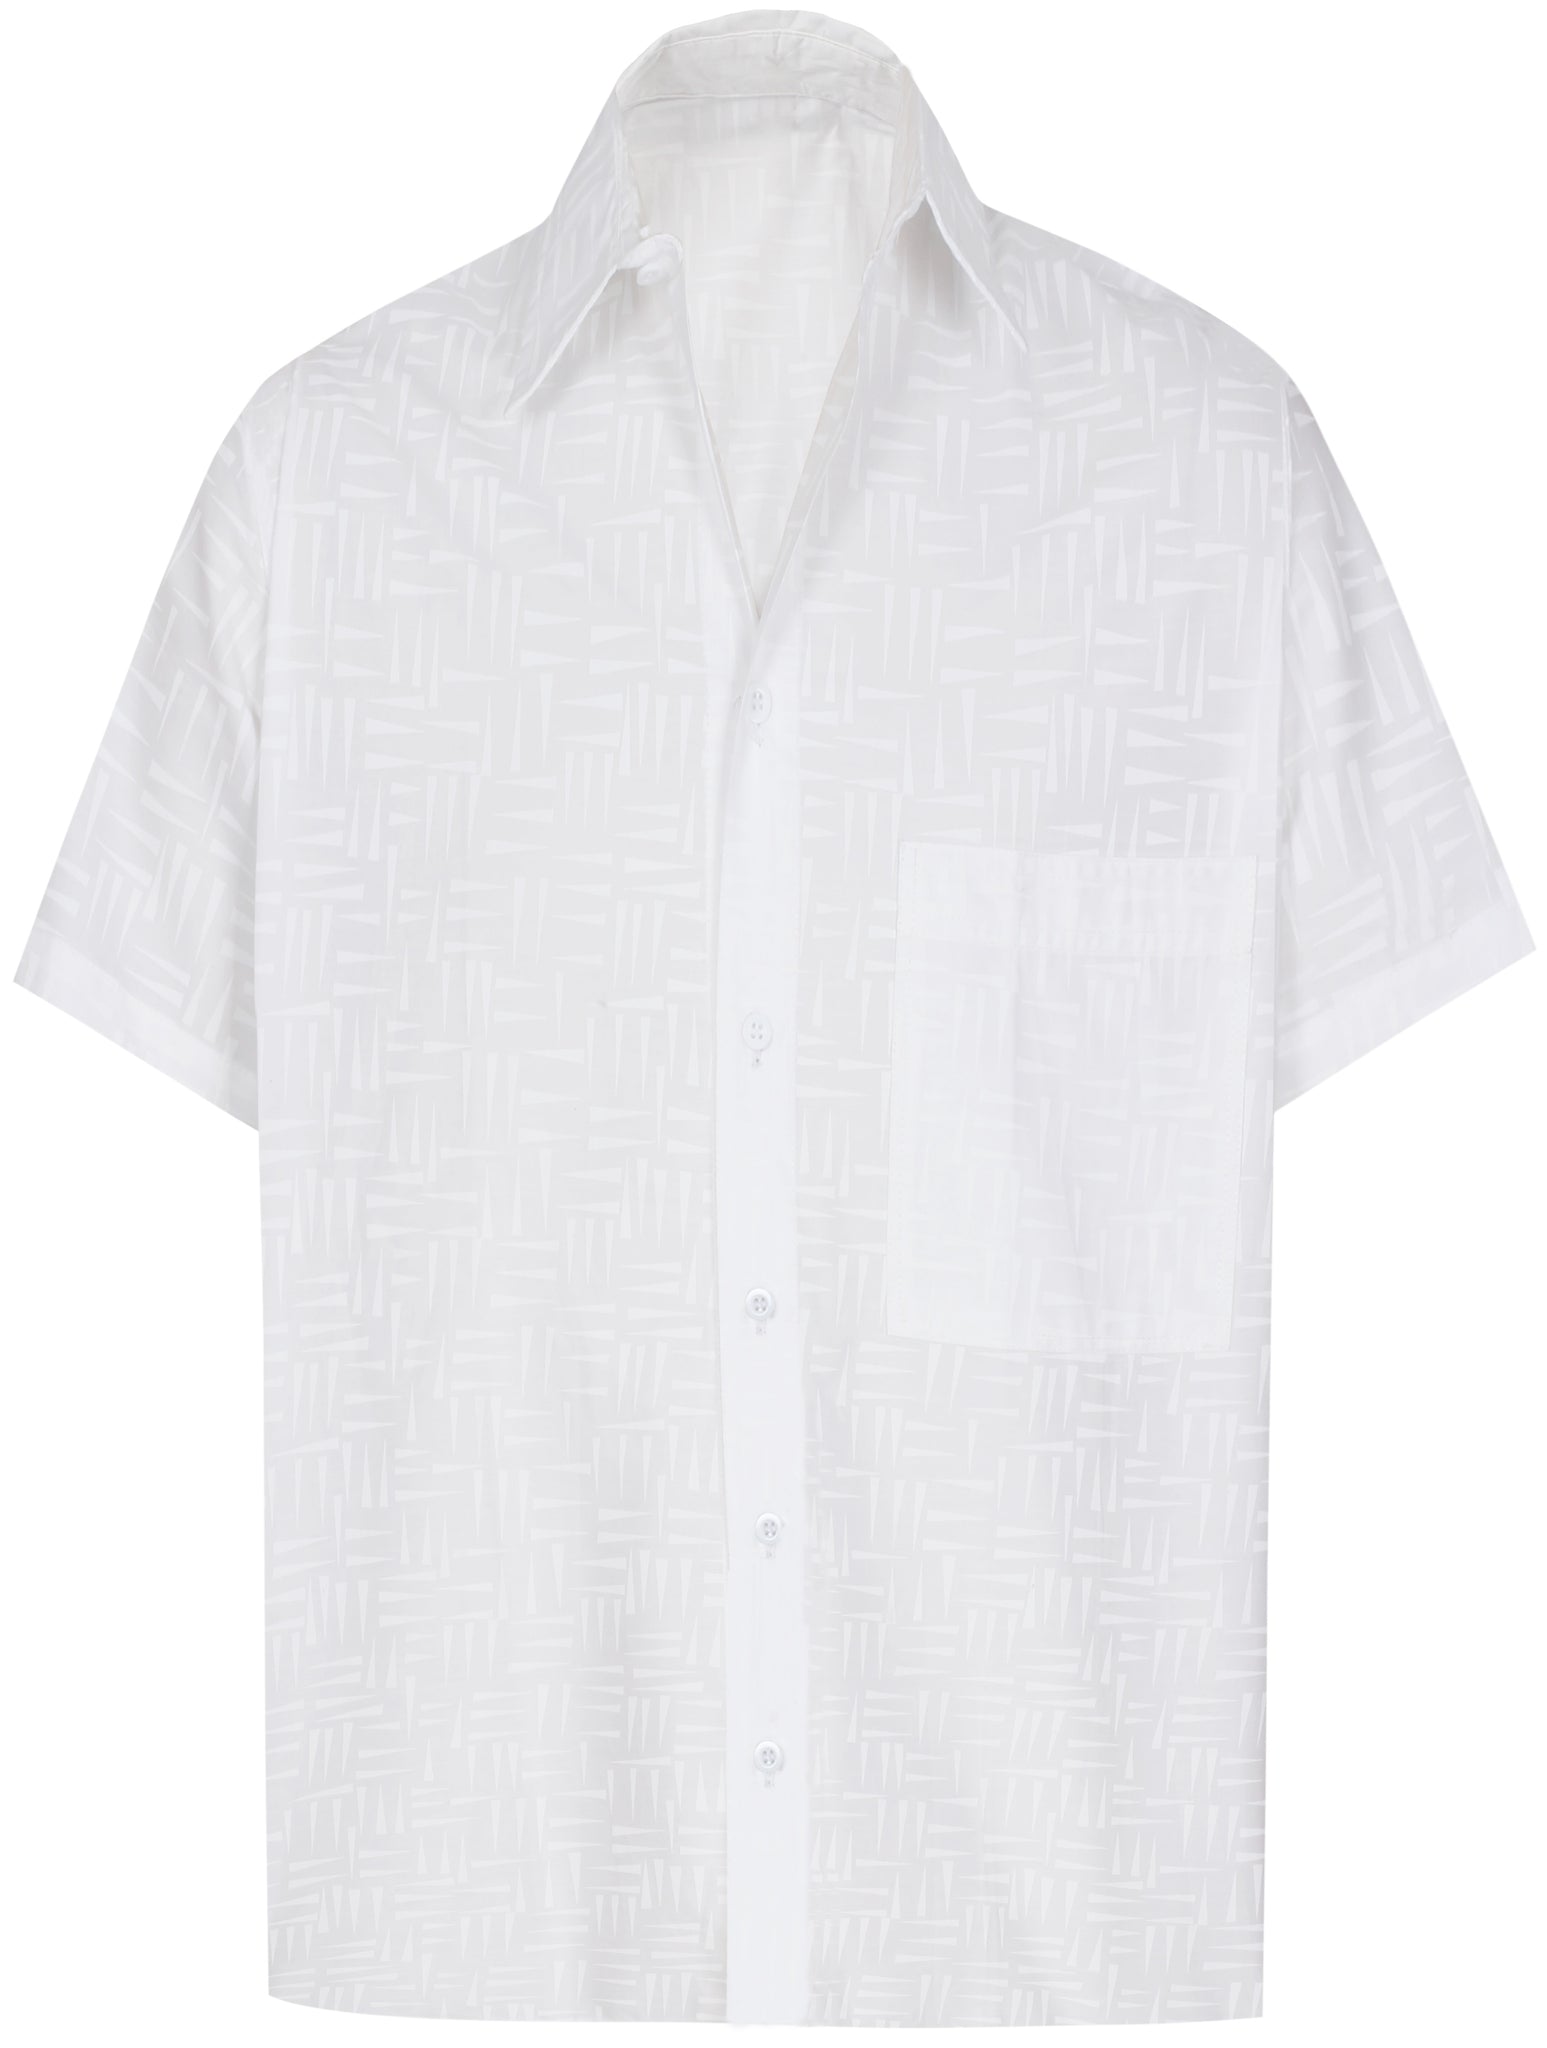 LA LEELA Men's Wear Summer Everyday Essentials Casual Shirt 100% ...